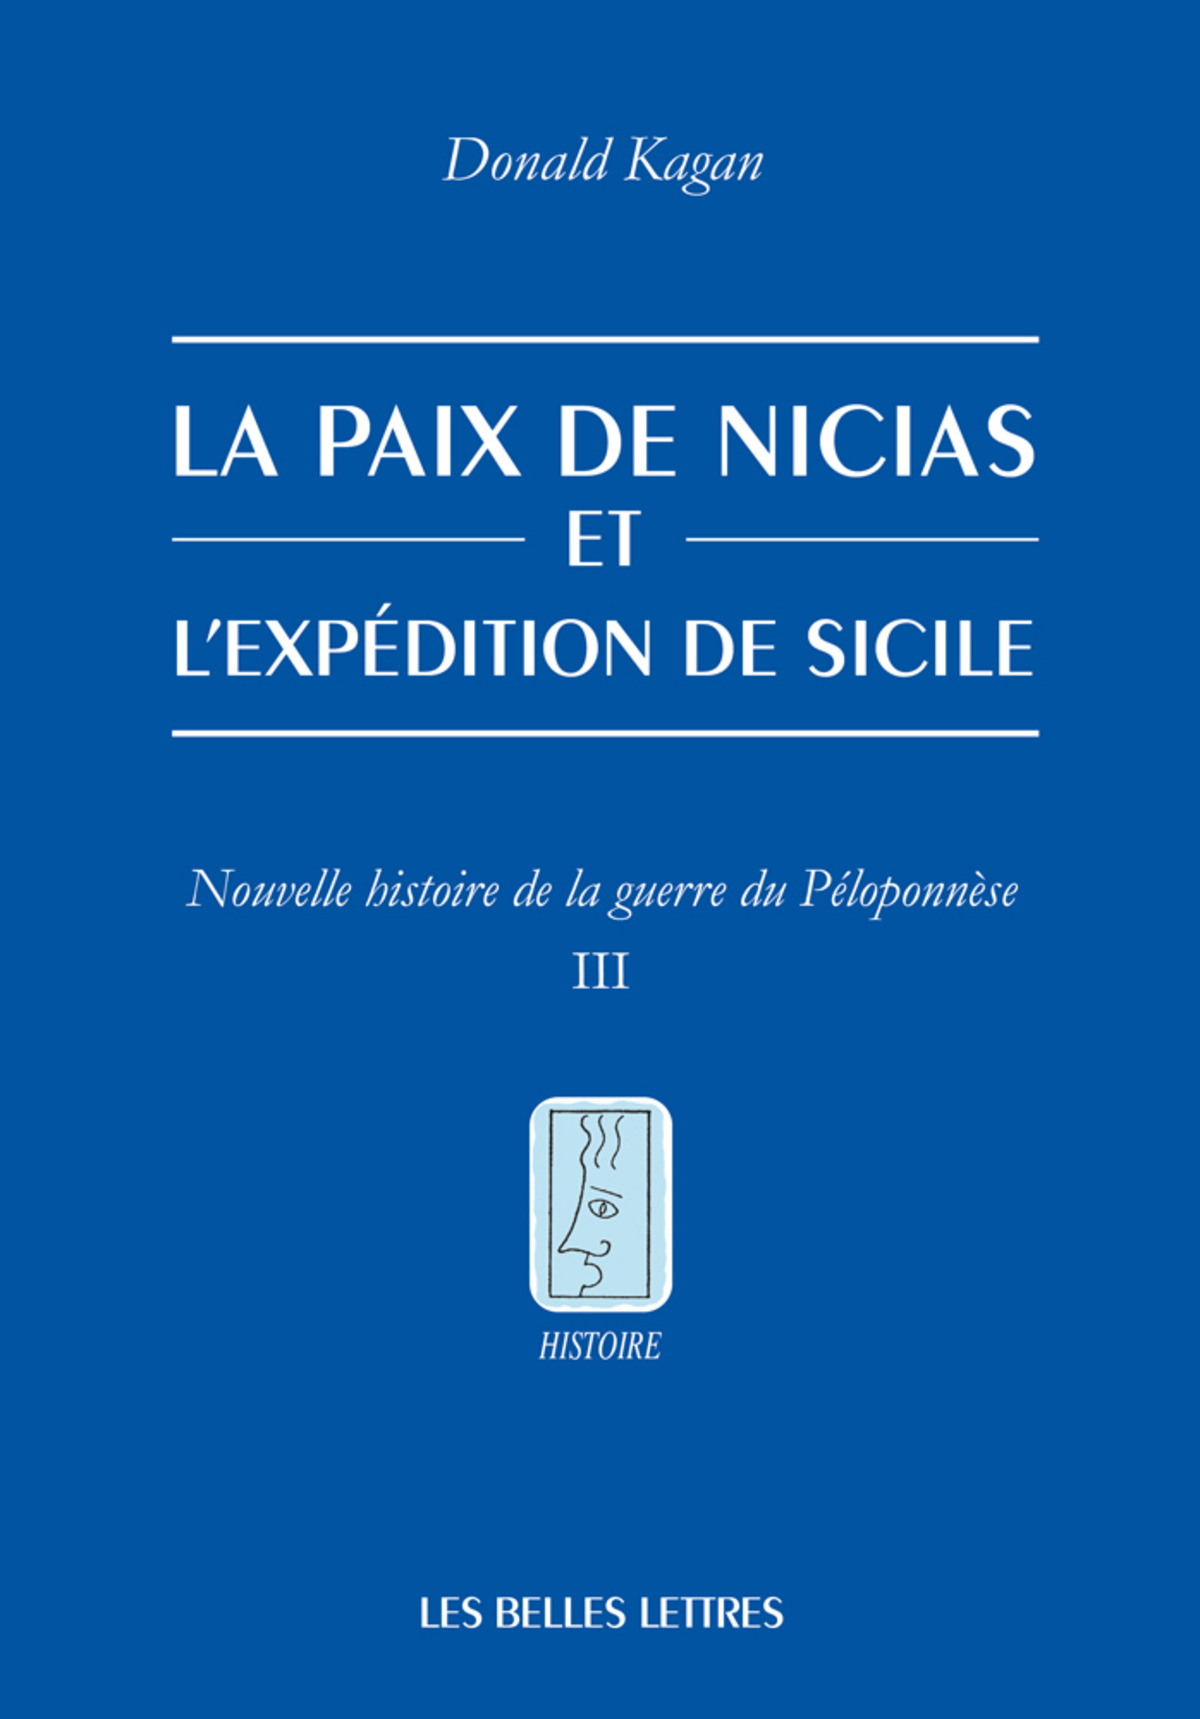 La paix de Nicias et l'expédition de Sicile